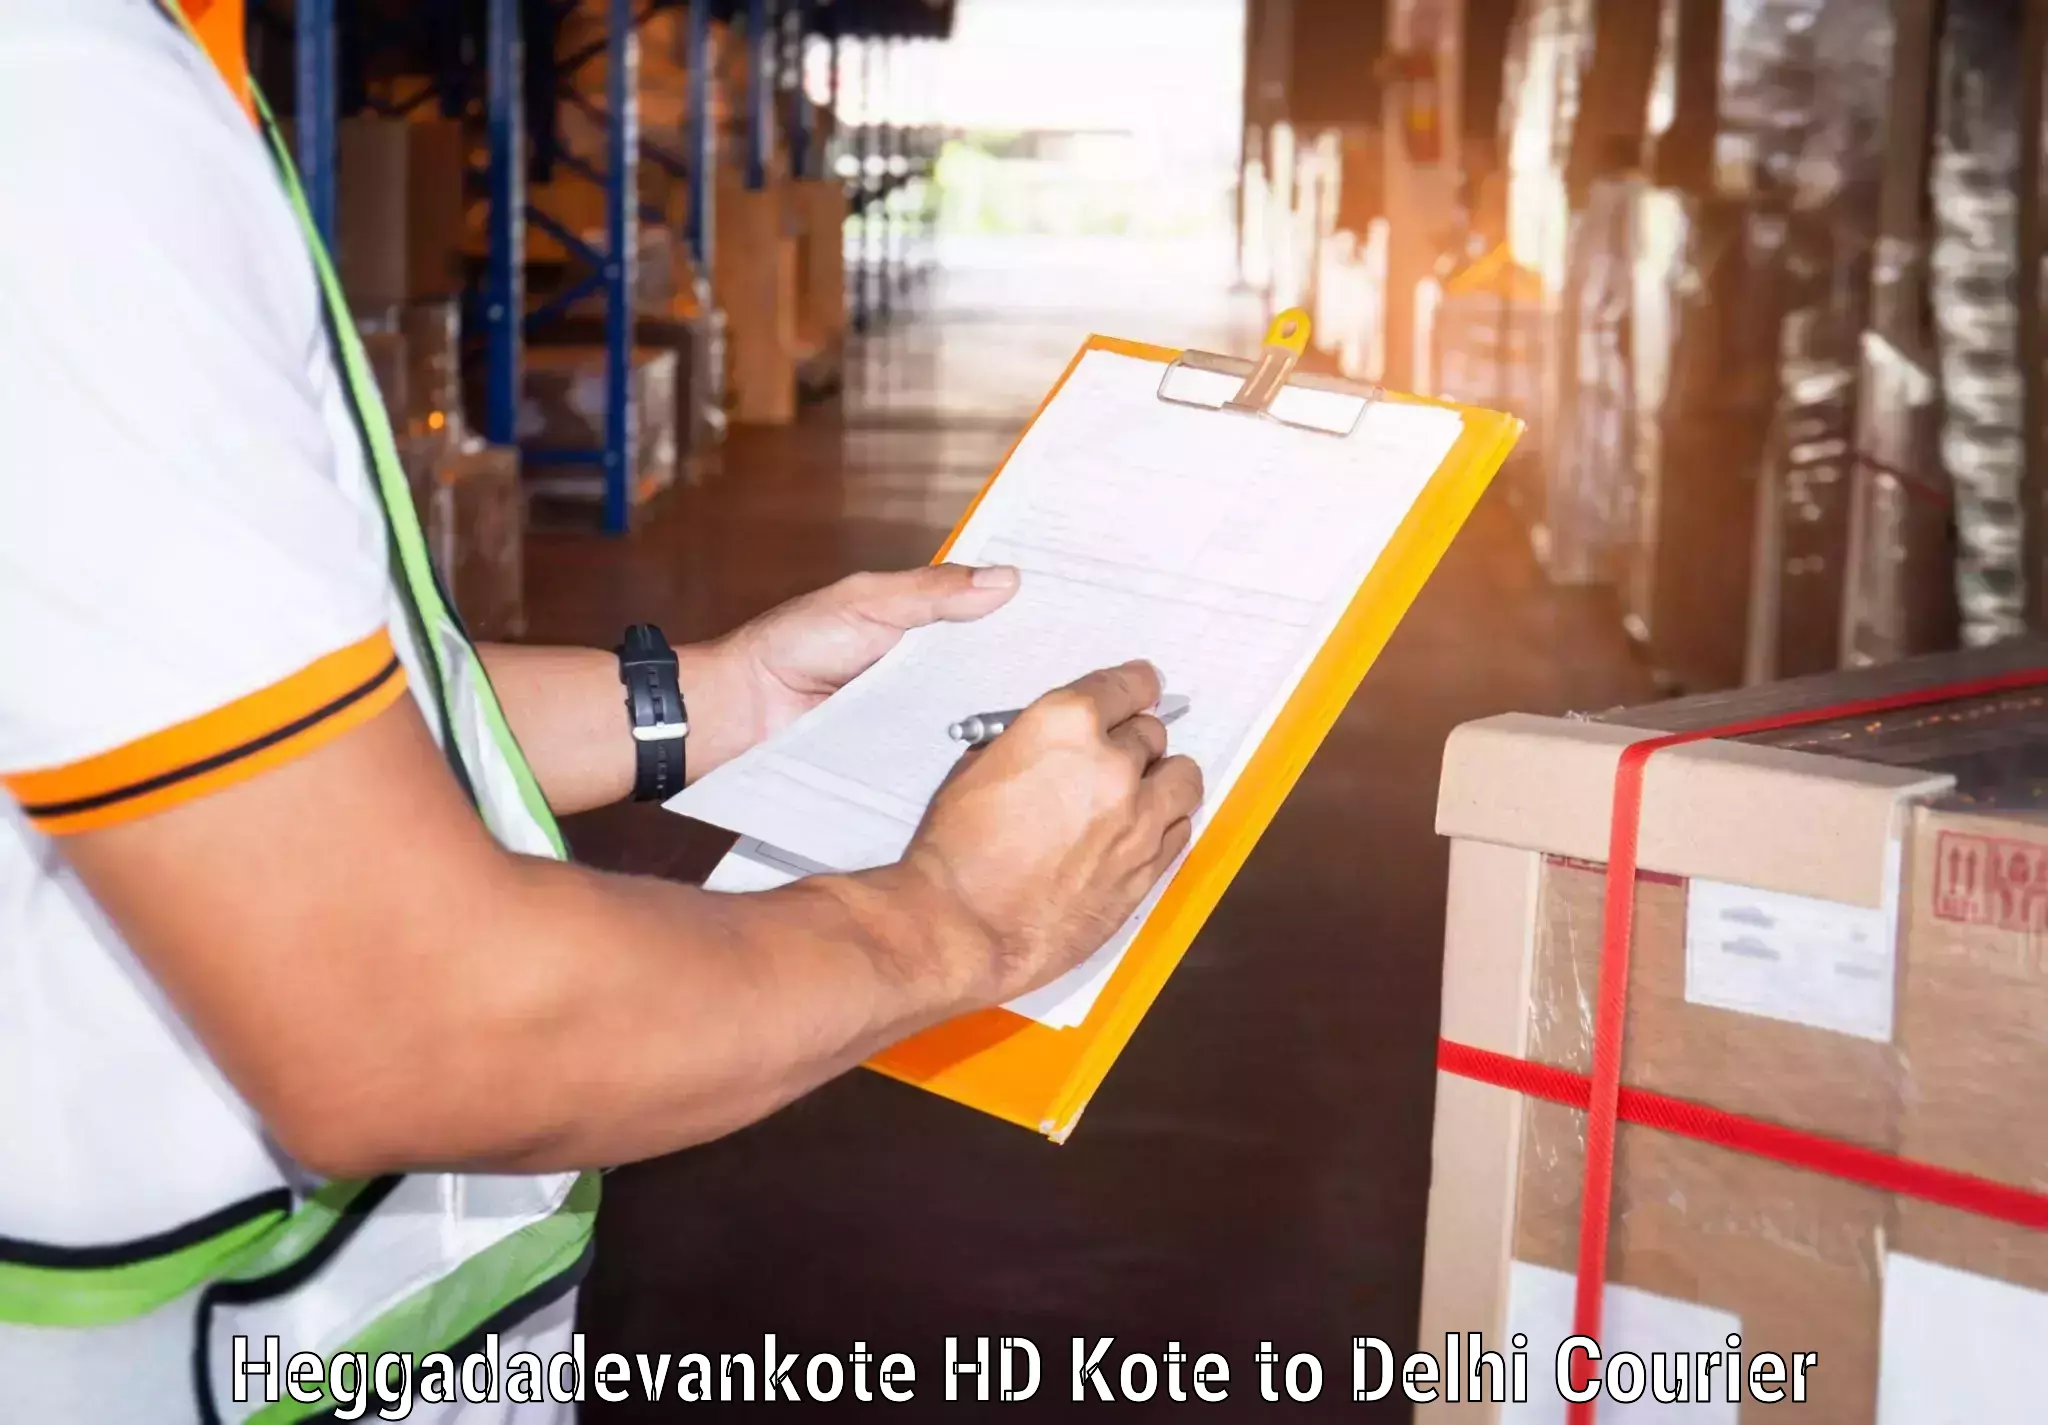 Personal parcel delivery in Heggadadevankote HD Kote to Kalkaji